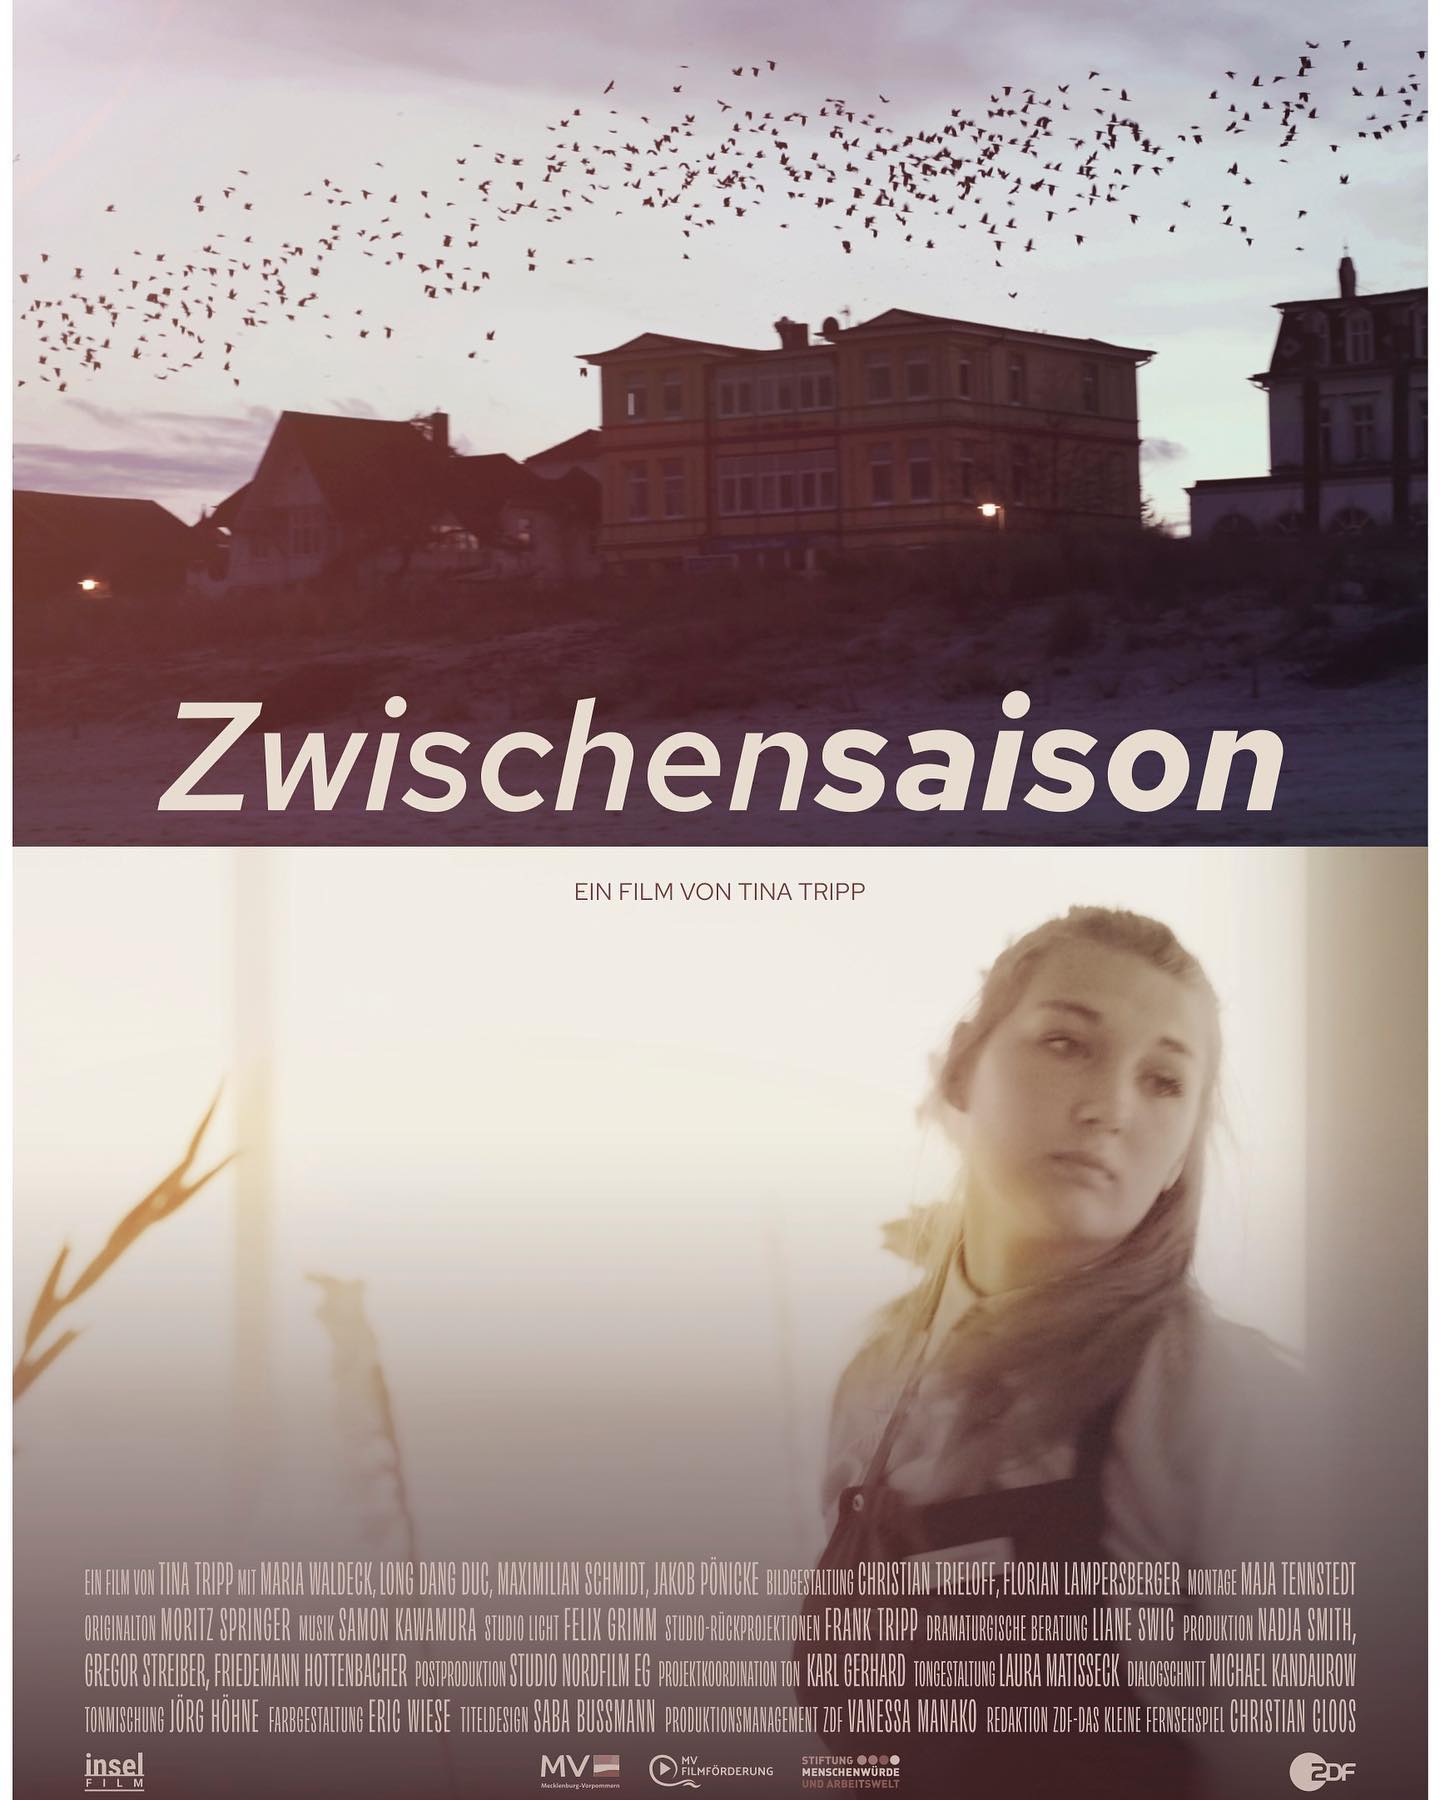 #Zwischensaison #Midseason #Tinatripp #documentary #documentaryfilm #achtungberlinfestival #premiere #zdfkleinesfernsehspiel #inselfilmproduktion